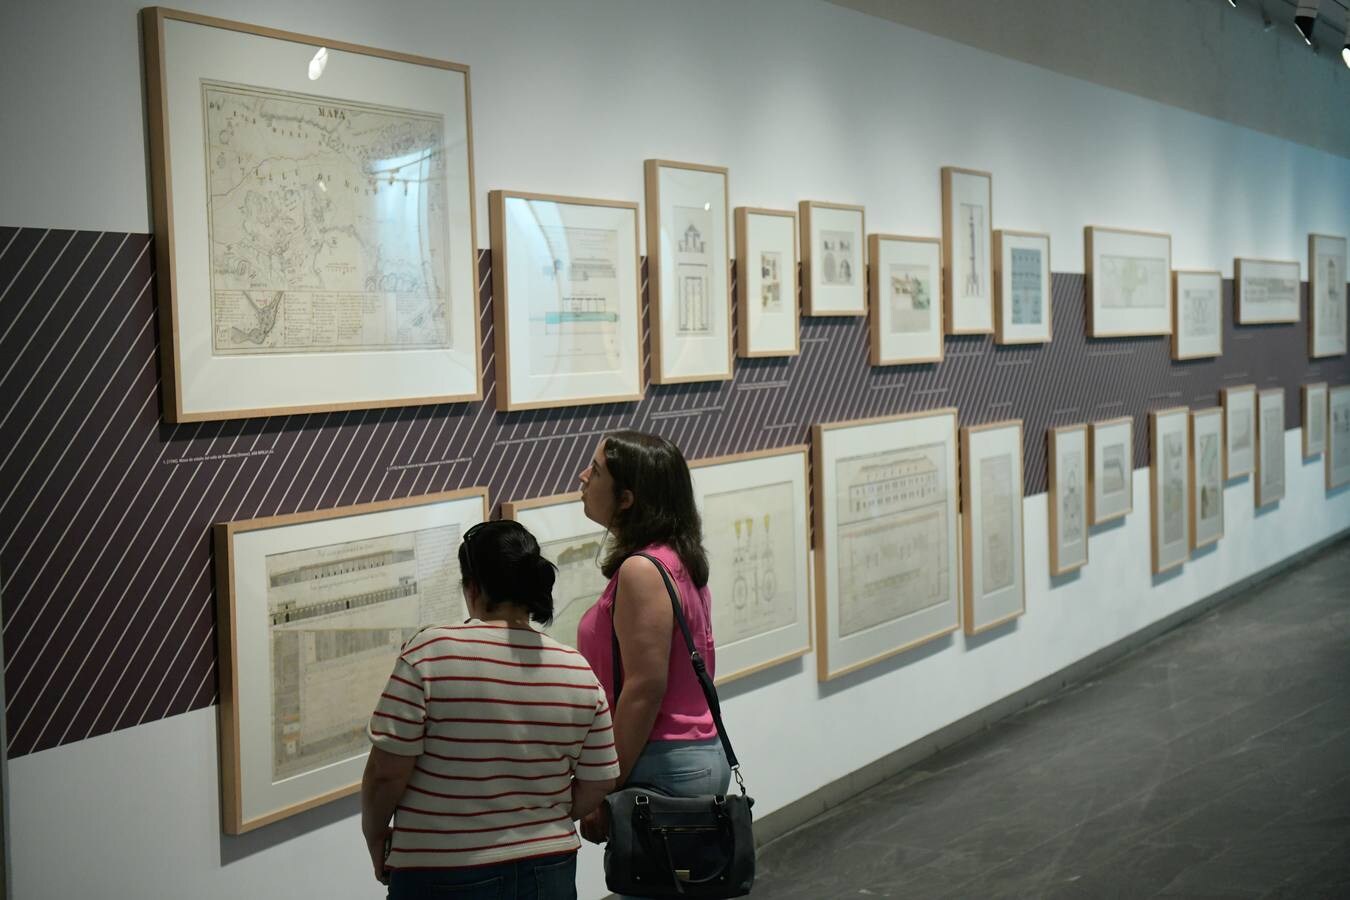 El Archivo de Simancas acoge la exposición 'Floridablanca, la sombra del rey Carlos III'. Los 43 documentos que proceden de una muestra anterior en Murcia son representaciones visuales de espacios y objetos de la colección de mapas, planos y dibujos.